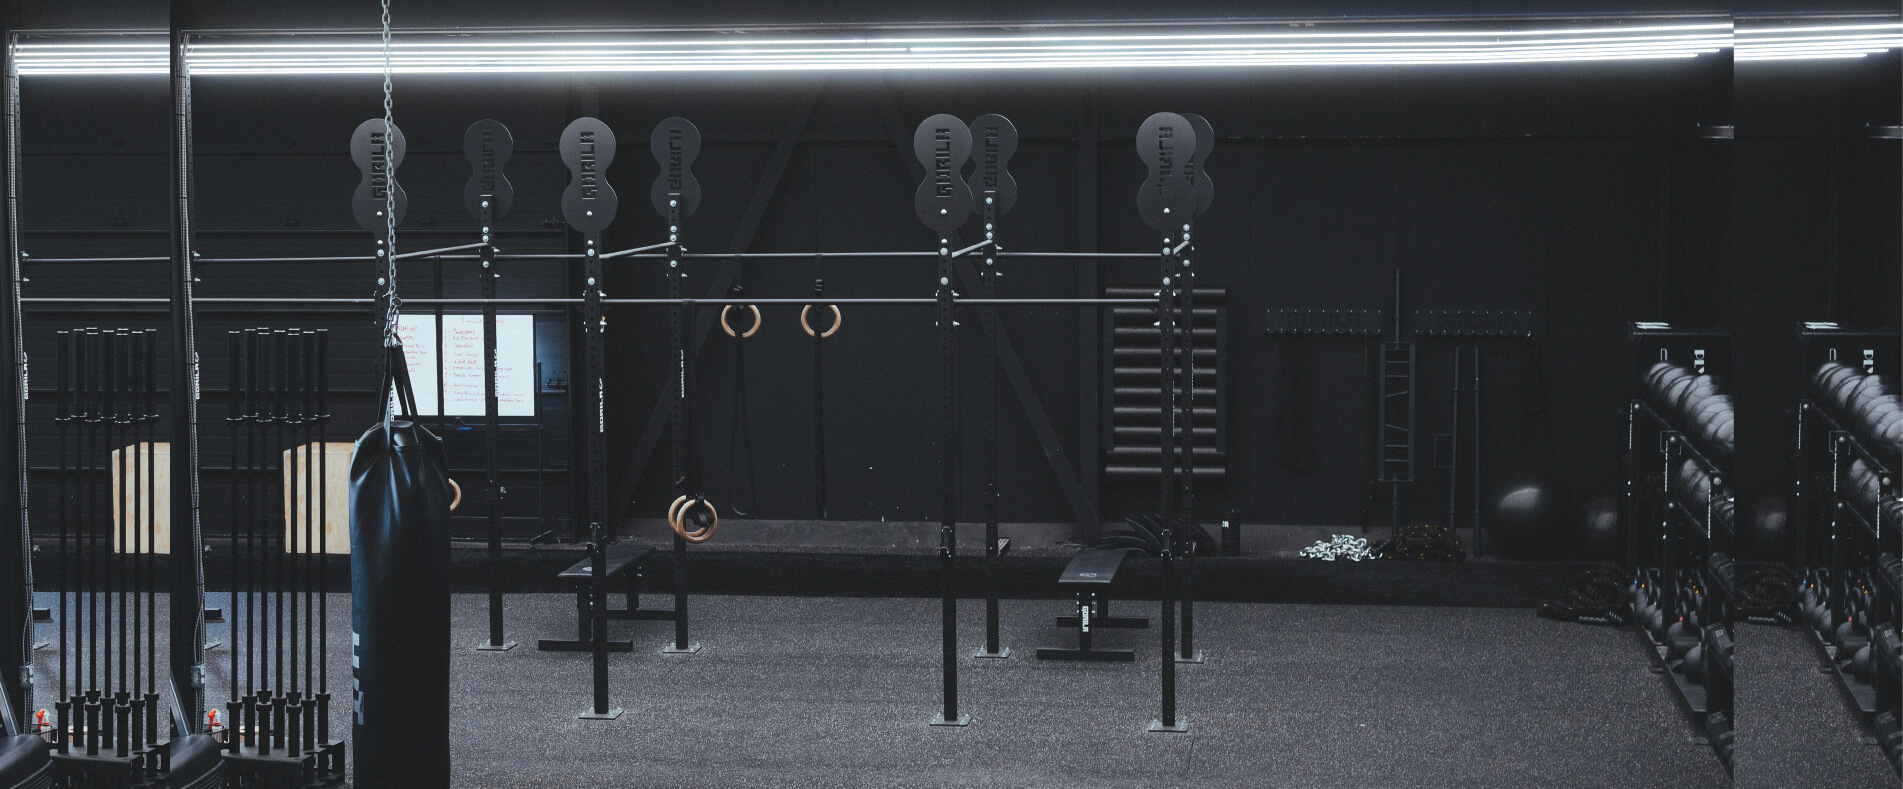 Bannière Web mettant en vedette des équiipements Gorila Fitness de haute qualité dans un gym commercial haut de gamme. Ton sur ton, noir.